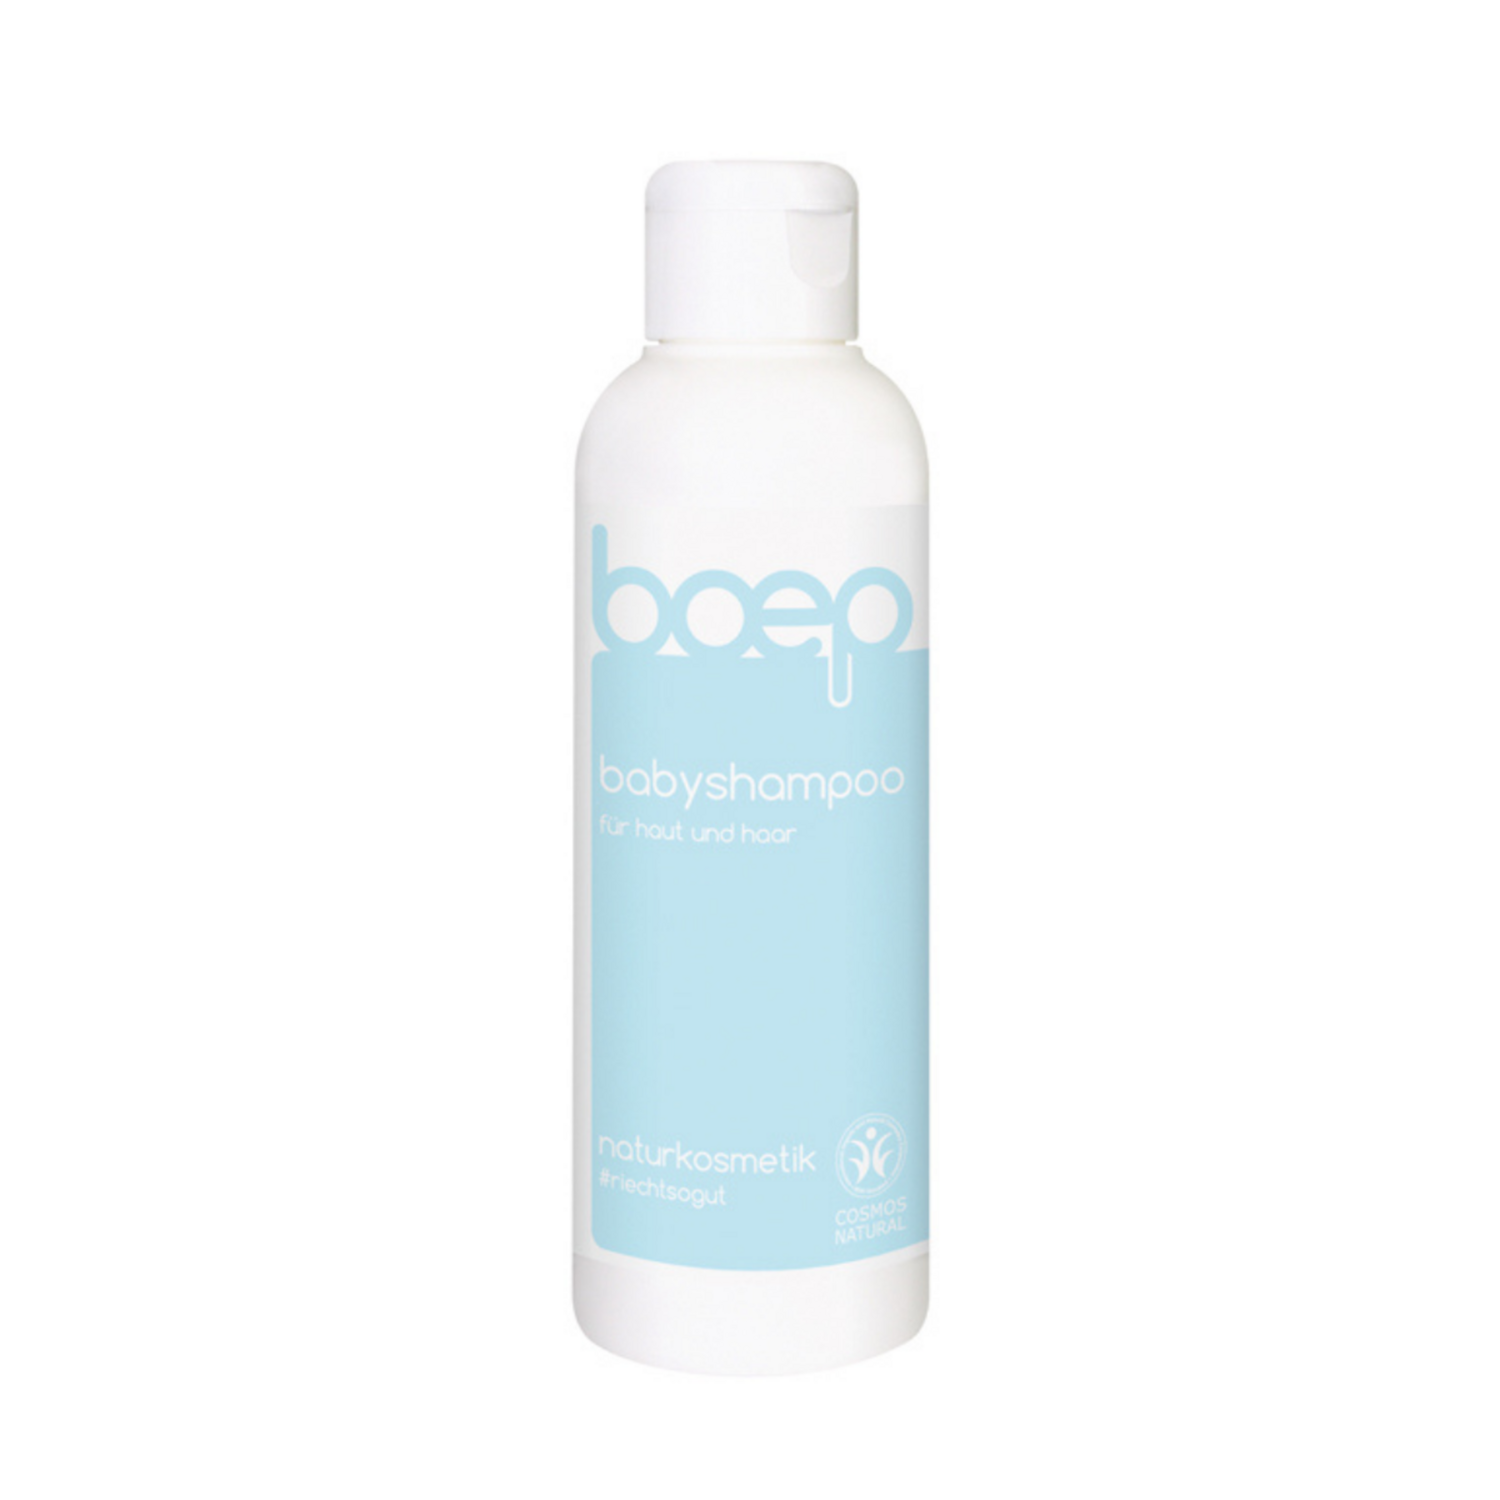 Boep Shampoo & bodywash (150ml)